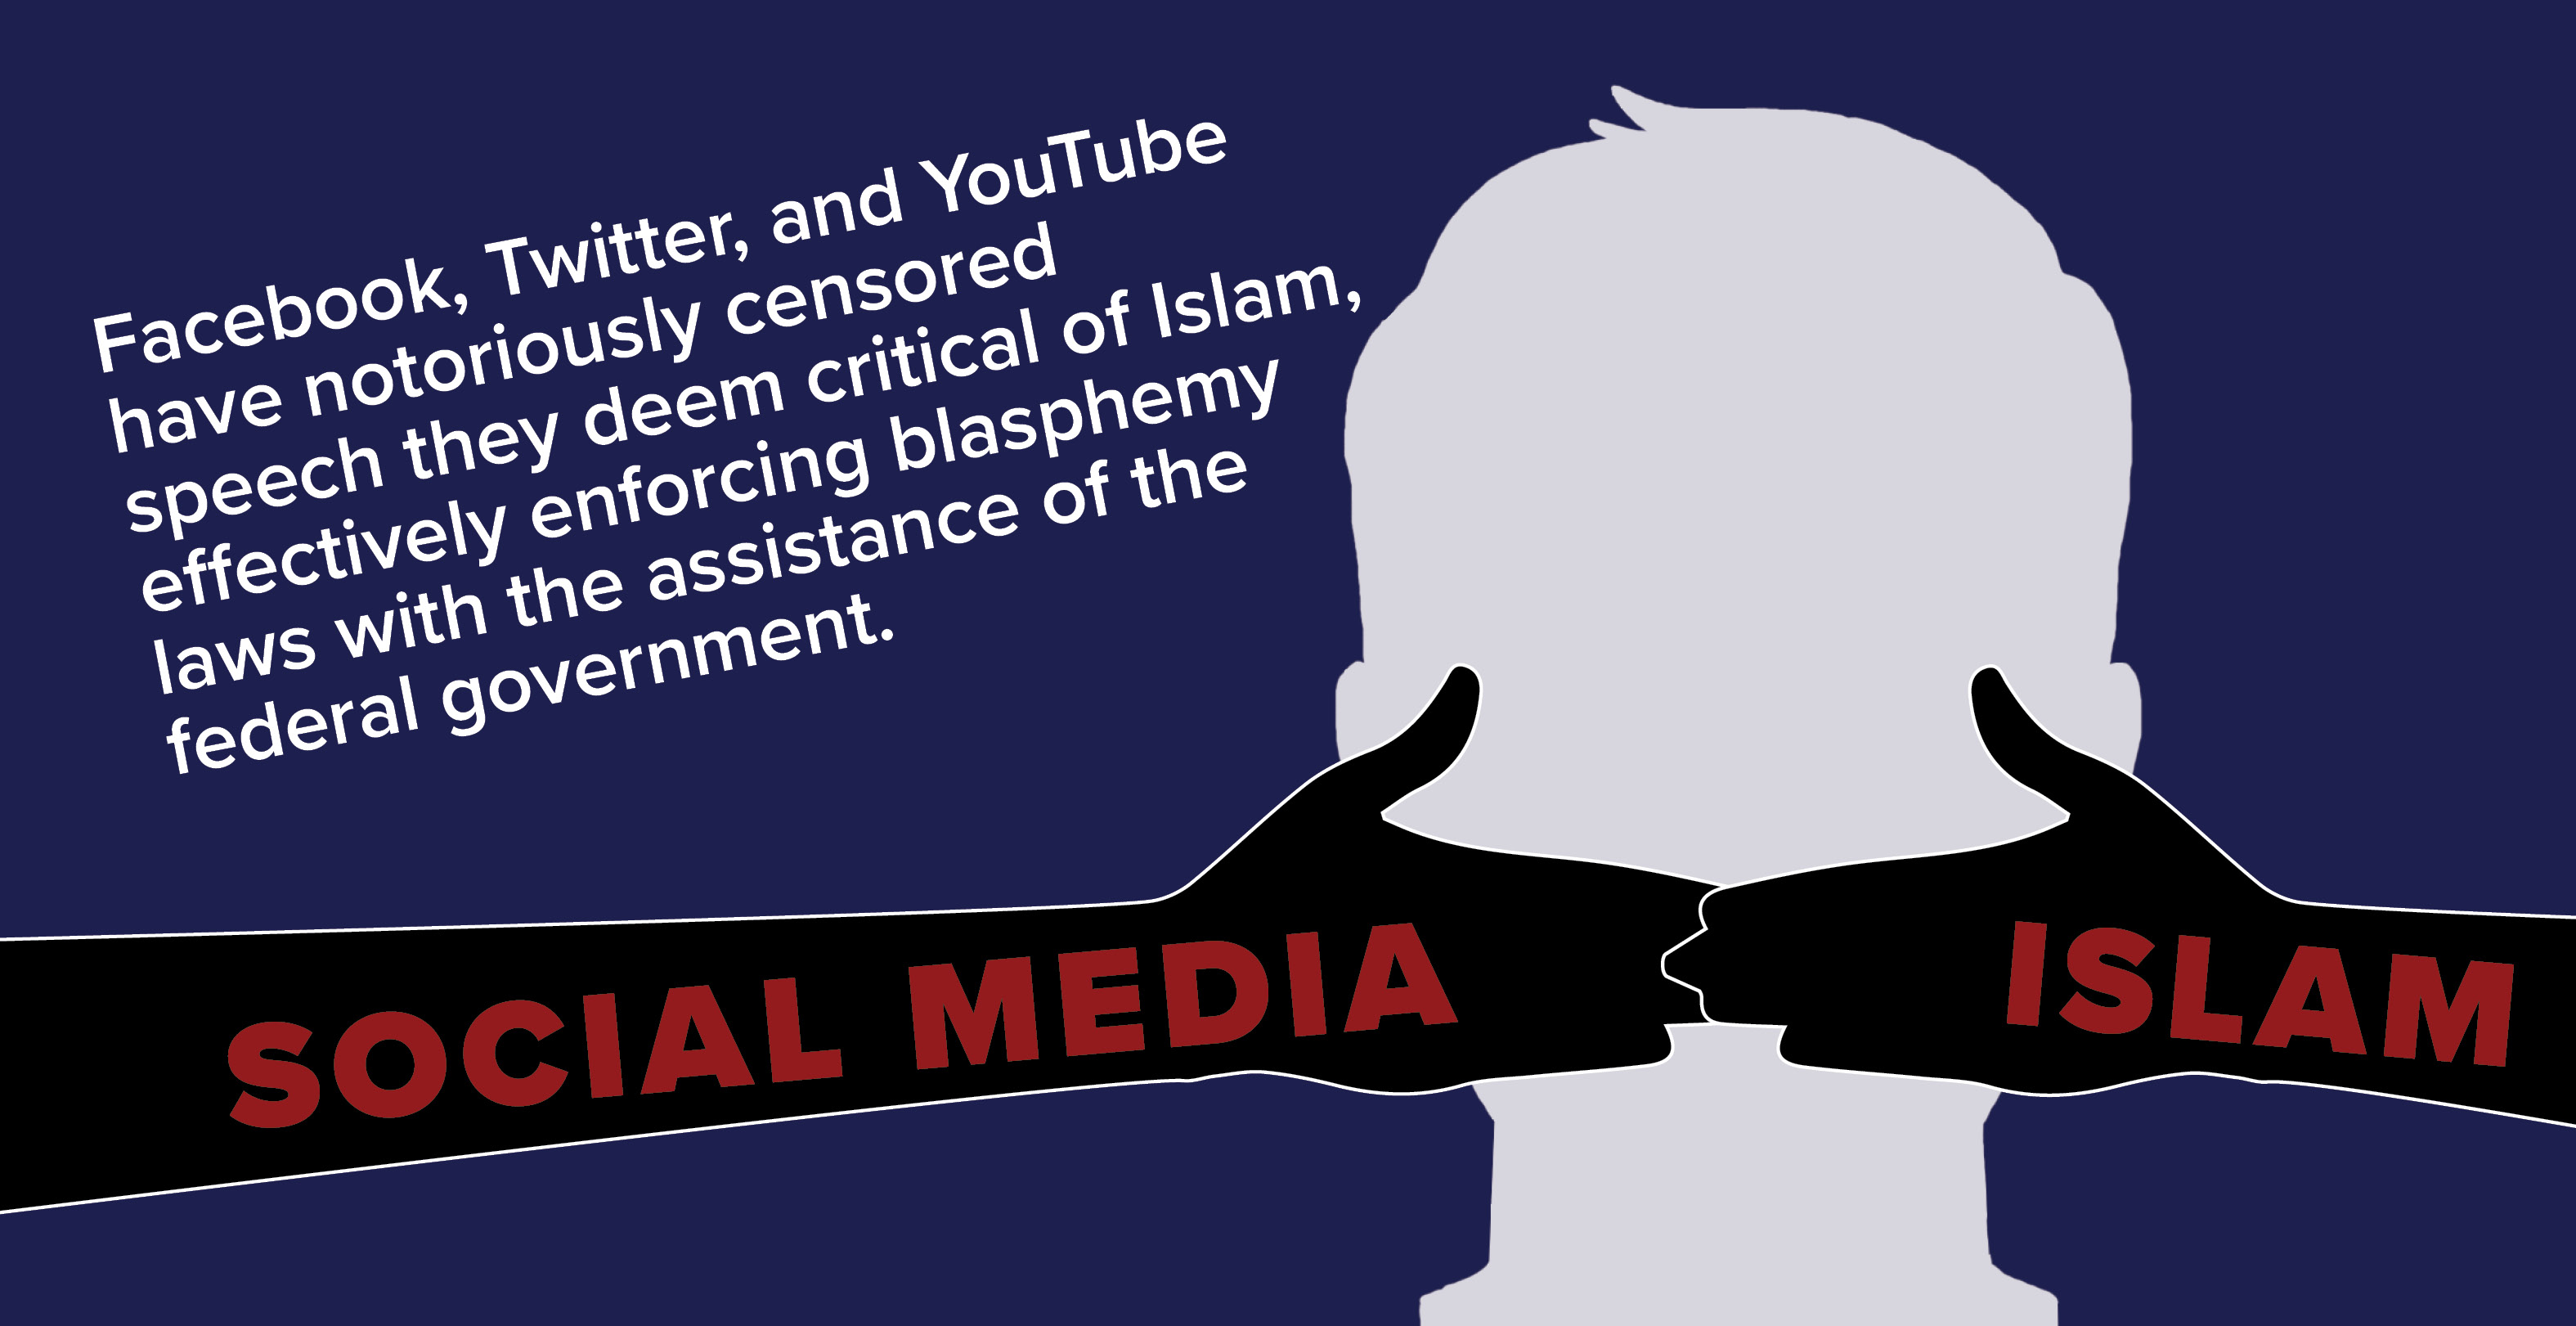 AFLC_SocialMedia_Censorship_Banner_07-11-16-3-Final.jpg